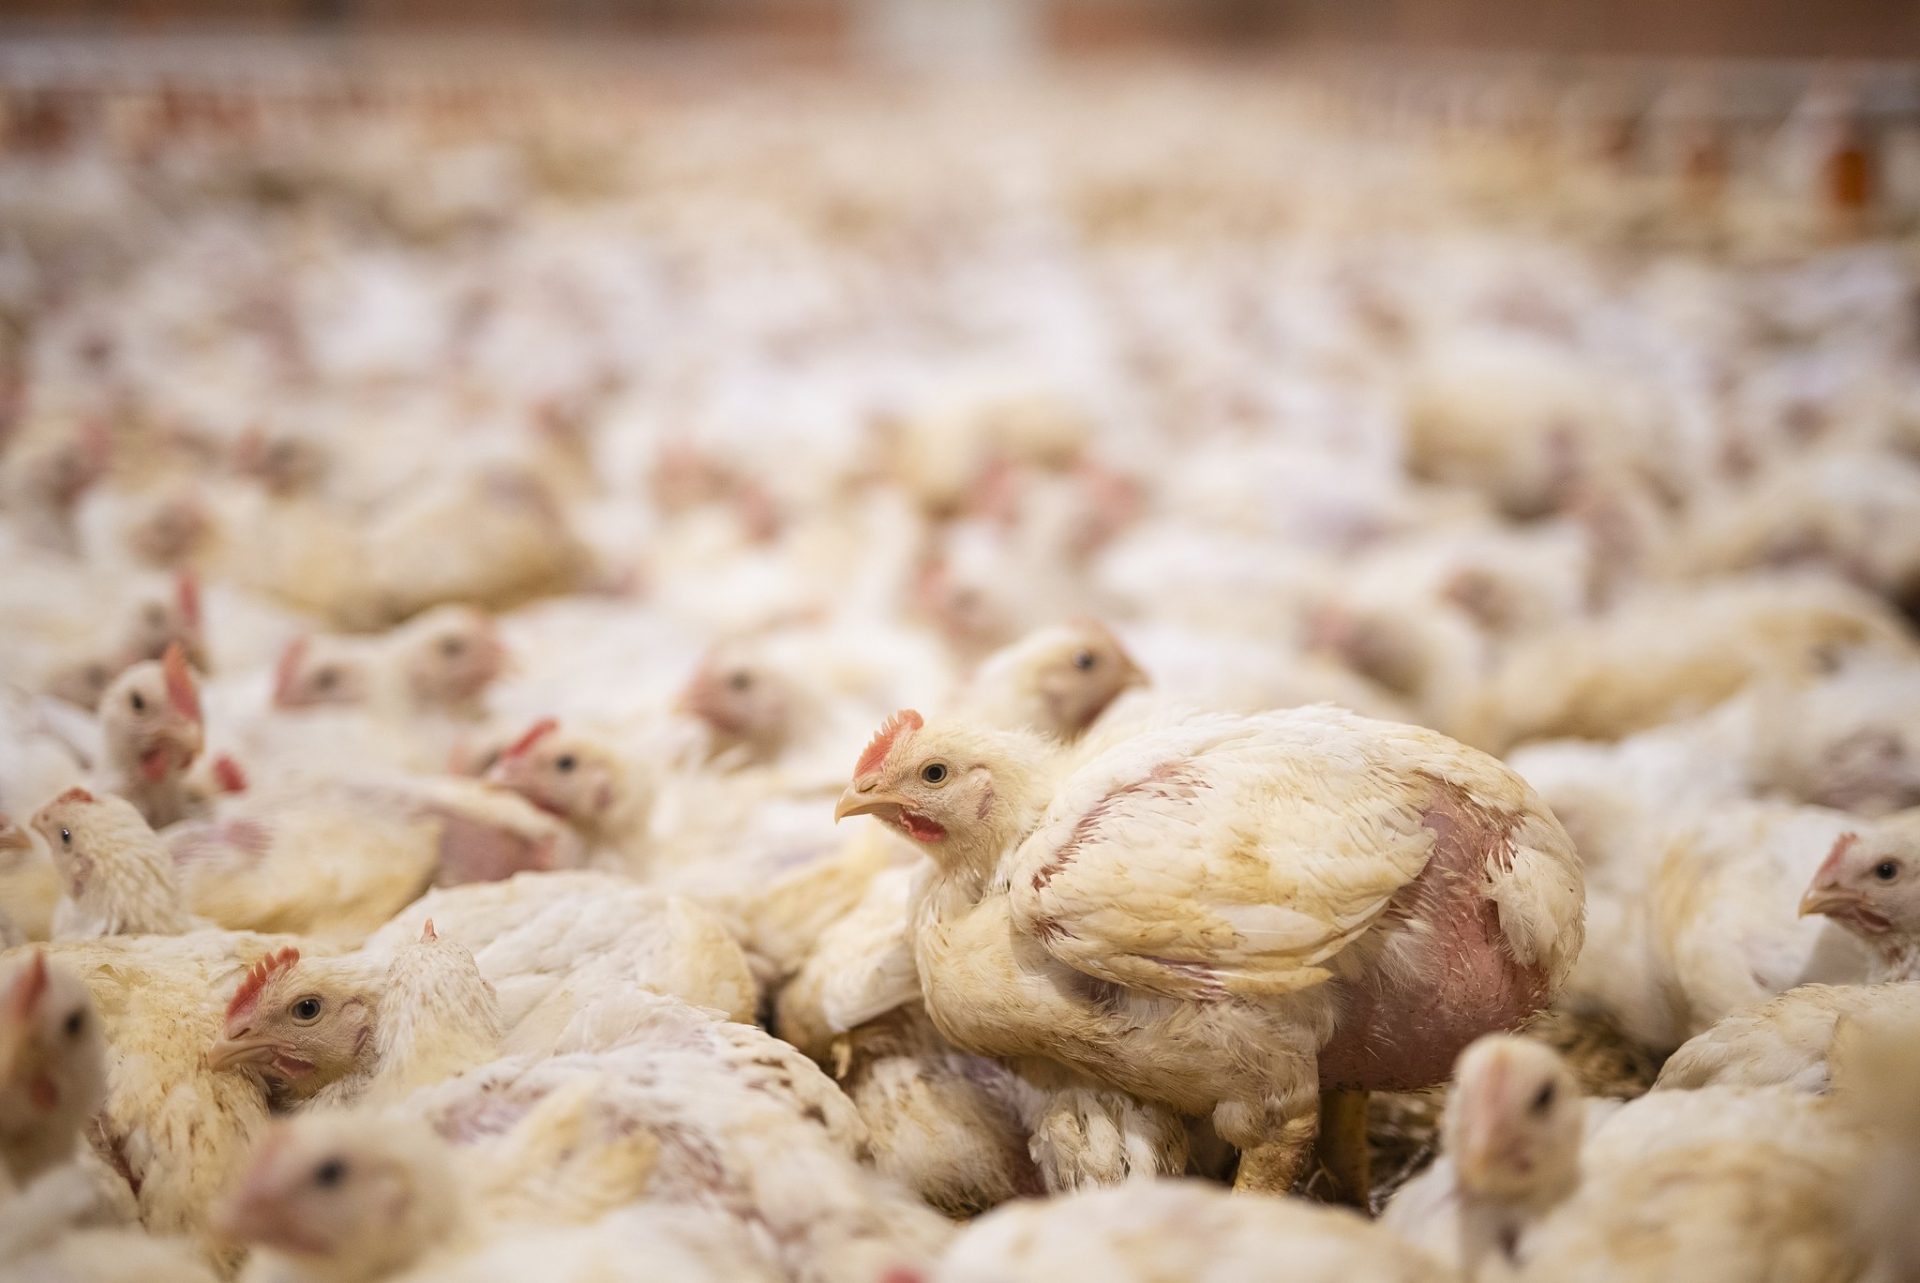 L214 enquête élevage industriel poulets